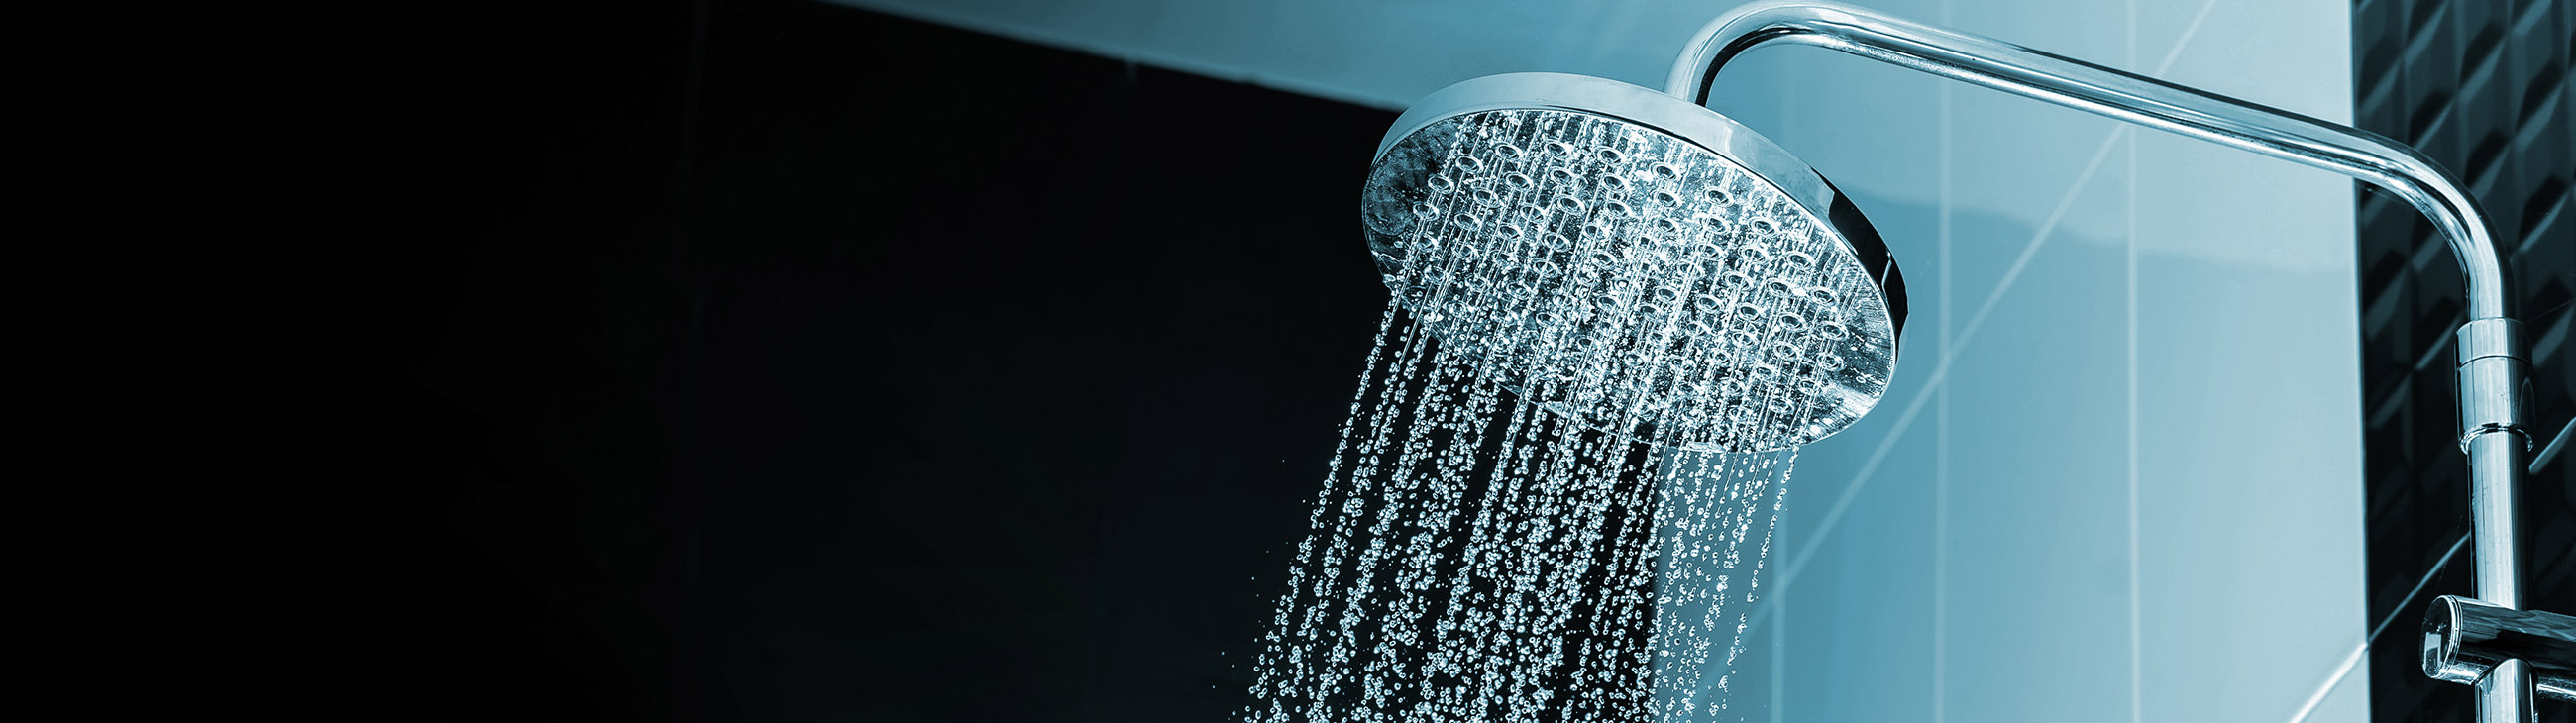 Bagno o doccia per chi soffre di eczema?